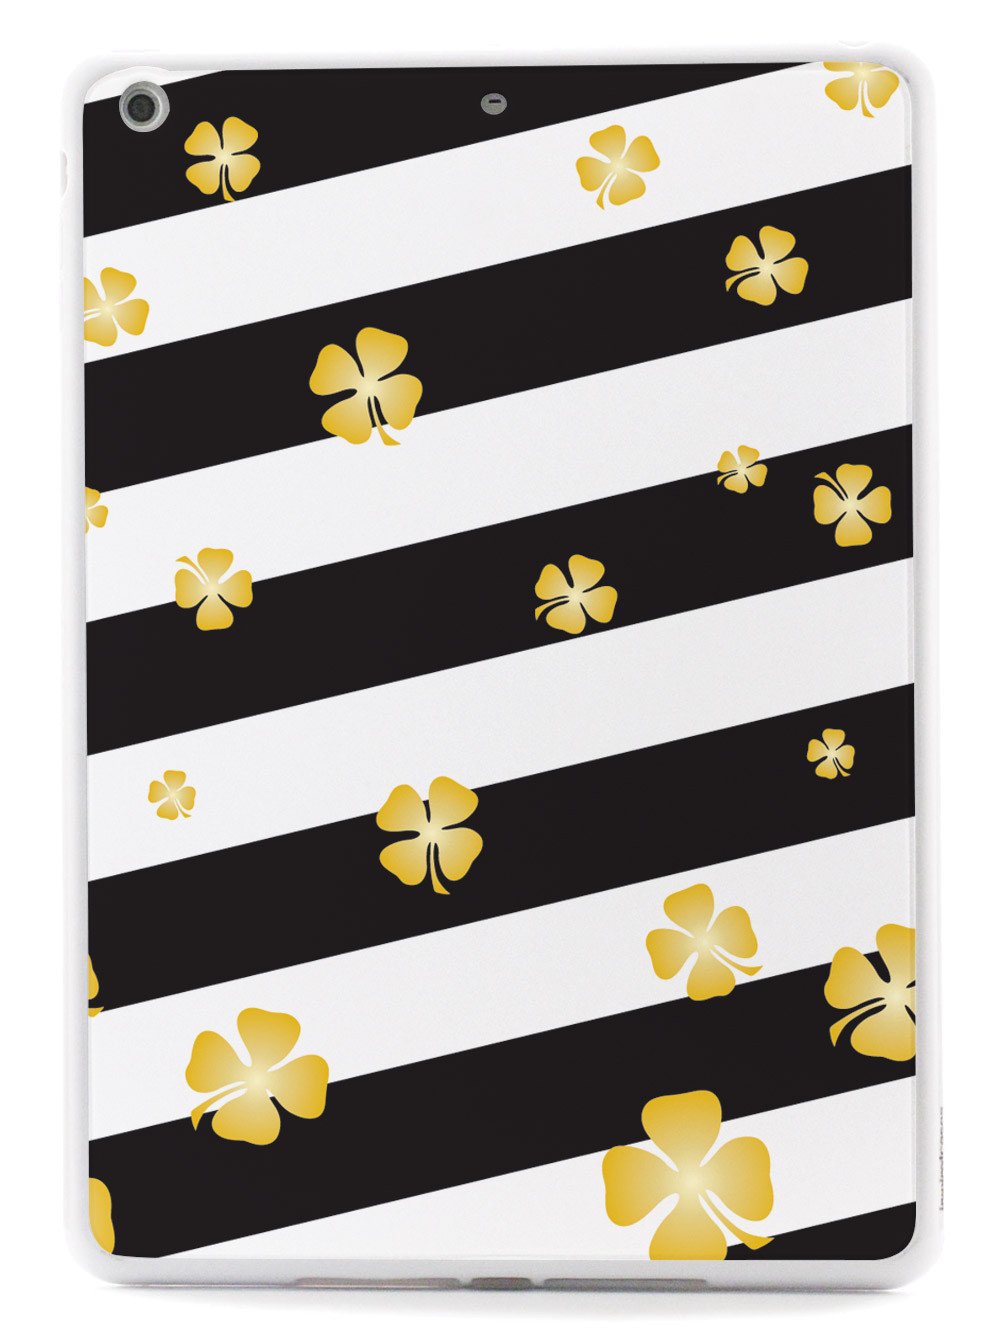 Striped Clover Pattern - Lucky St. Patrick's Day Case